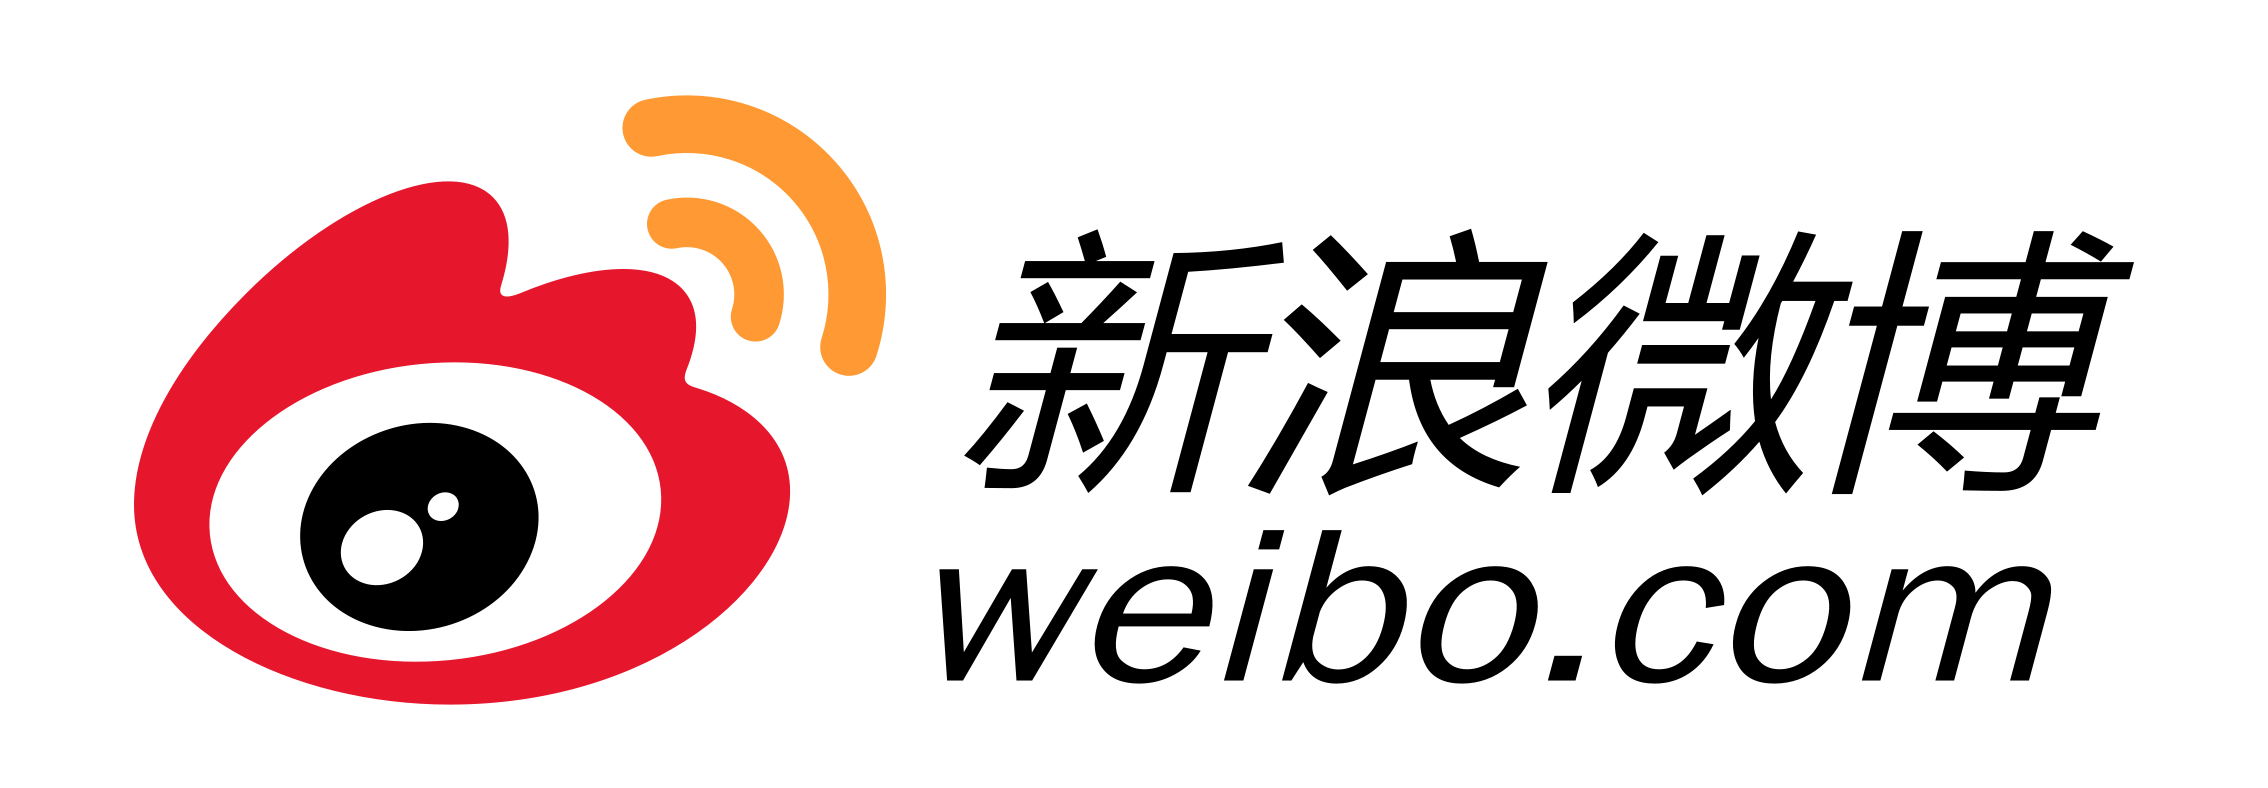 9月15日から微博(Weibo)で実名認証を行っていないアカウントが使用できなくなると案内。SMS認証で回避可能